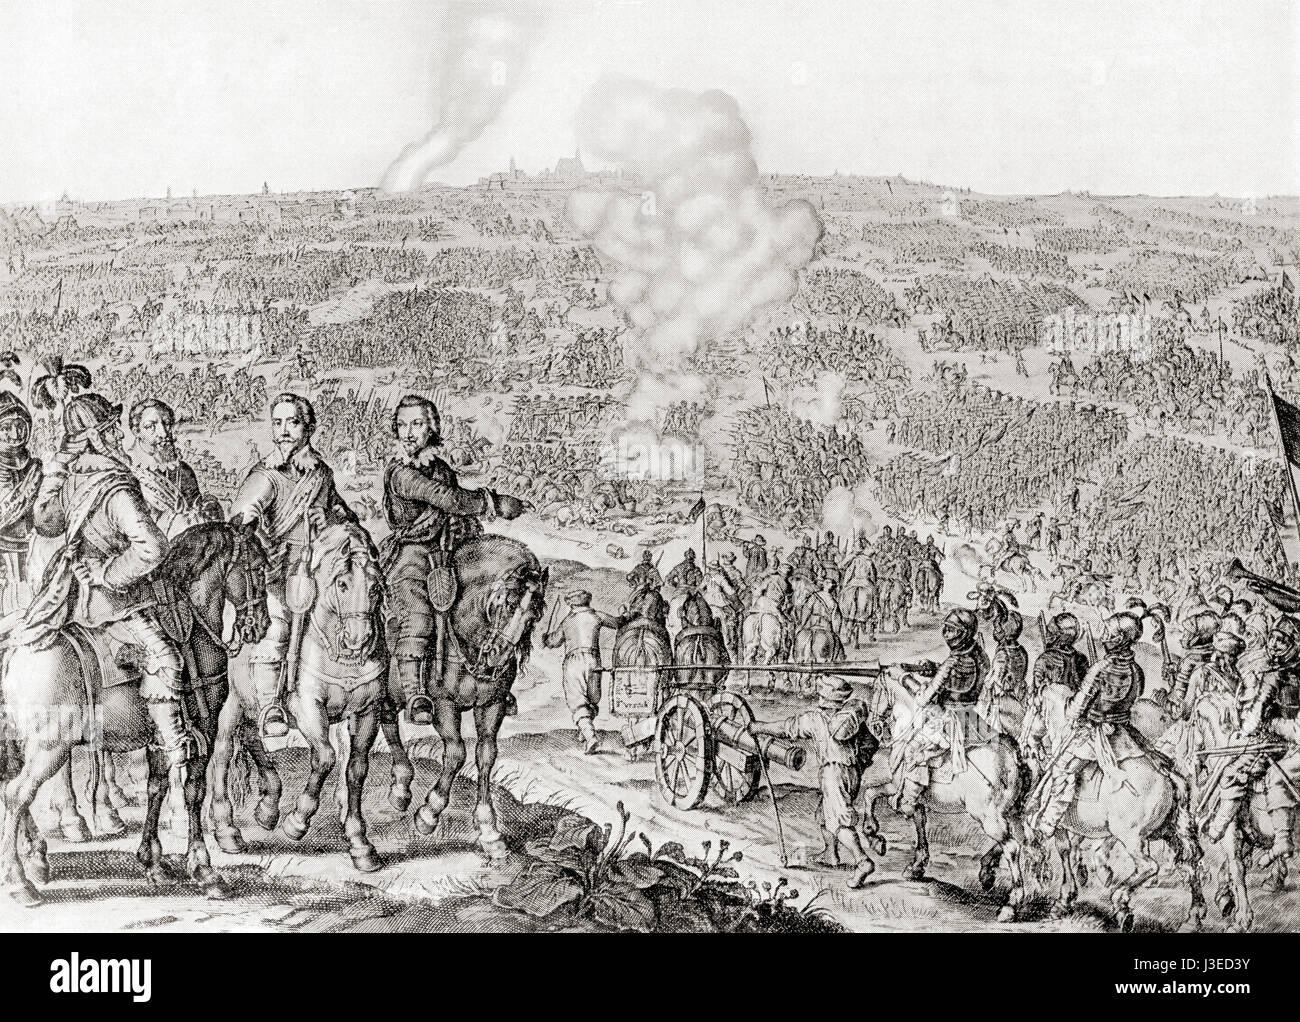 Die erste Schlacht von Leipzig, auch bekannt als die zweite Schlacht von Breitenfeld, 1642 während des Dreißigjährigen Krieges. Aus Hutchinsons Geschichte der Nationen, veröffentlicht 1915. Stockfoto